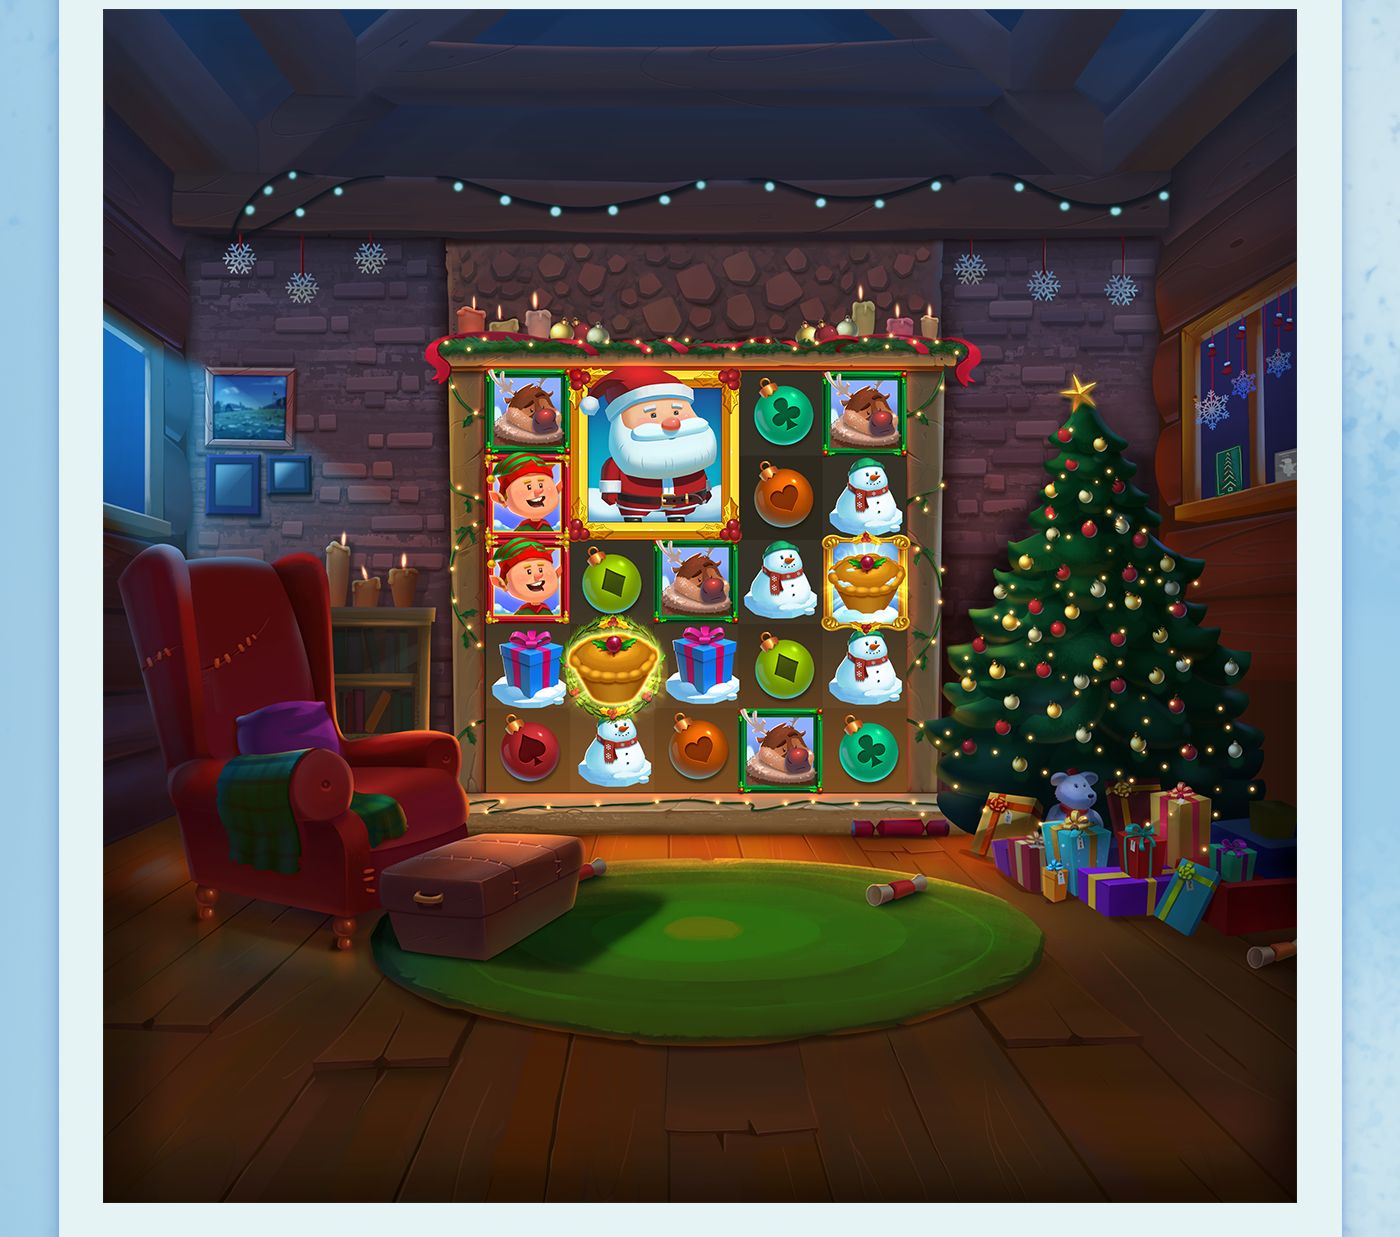 fatsanta fatrabbit slot mobilegame slotgame gambling santa Christmas christmasgame xmas